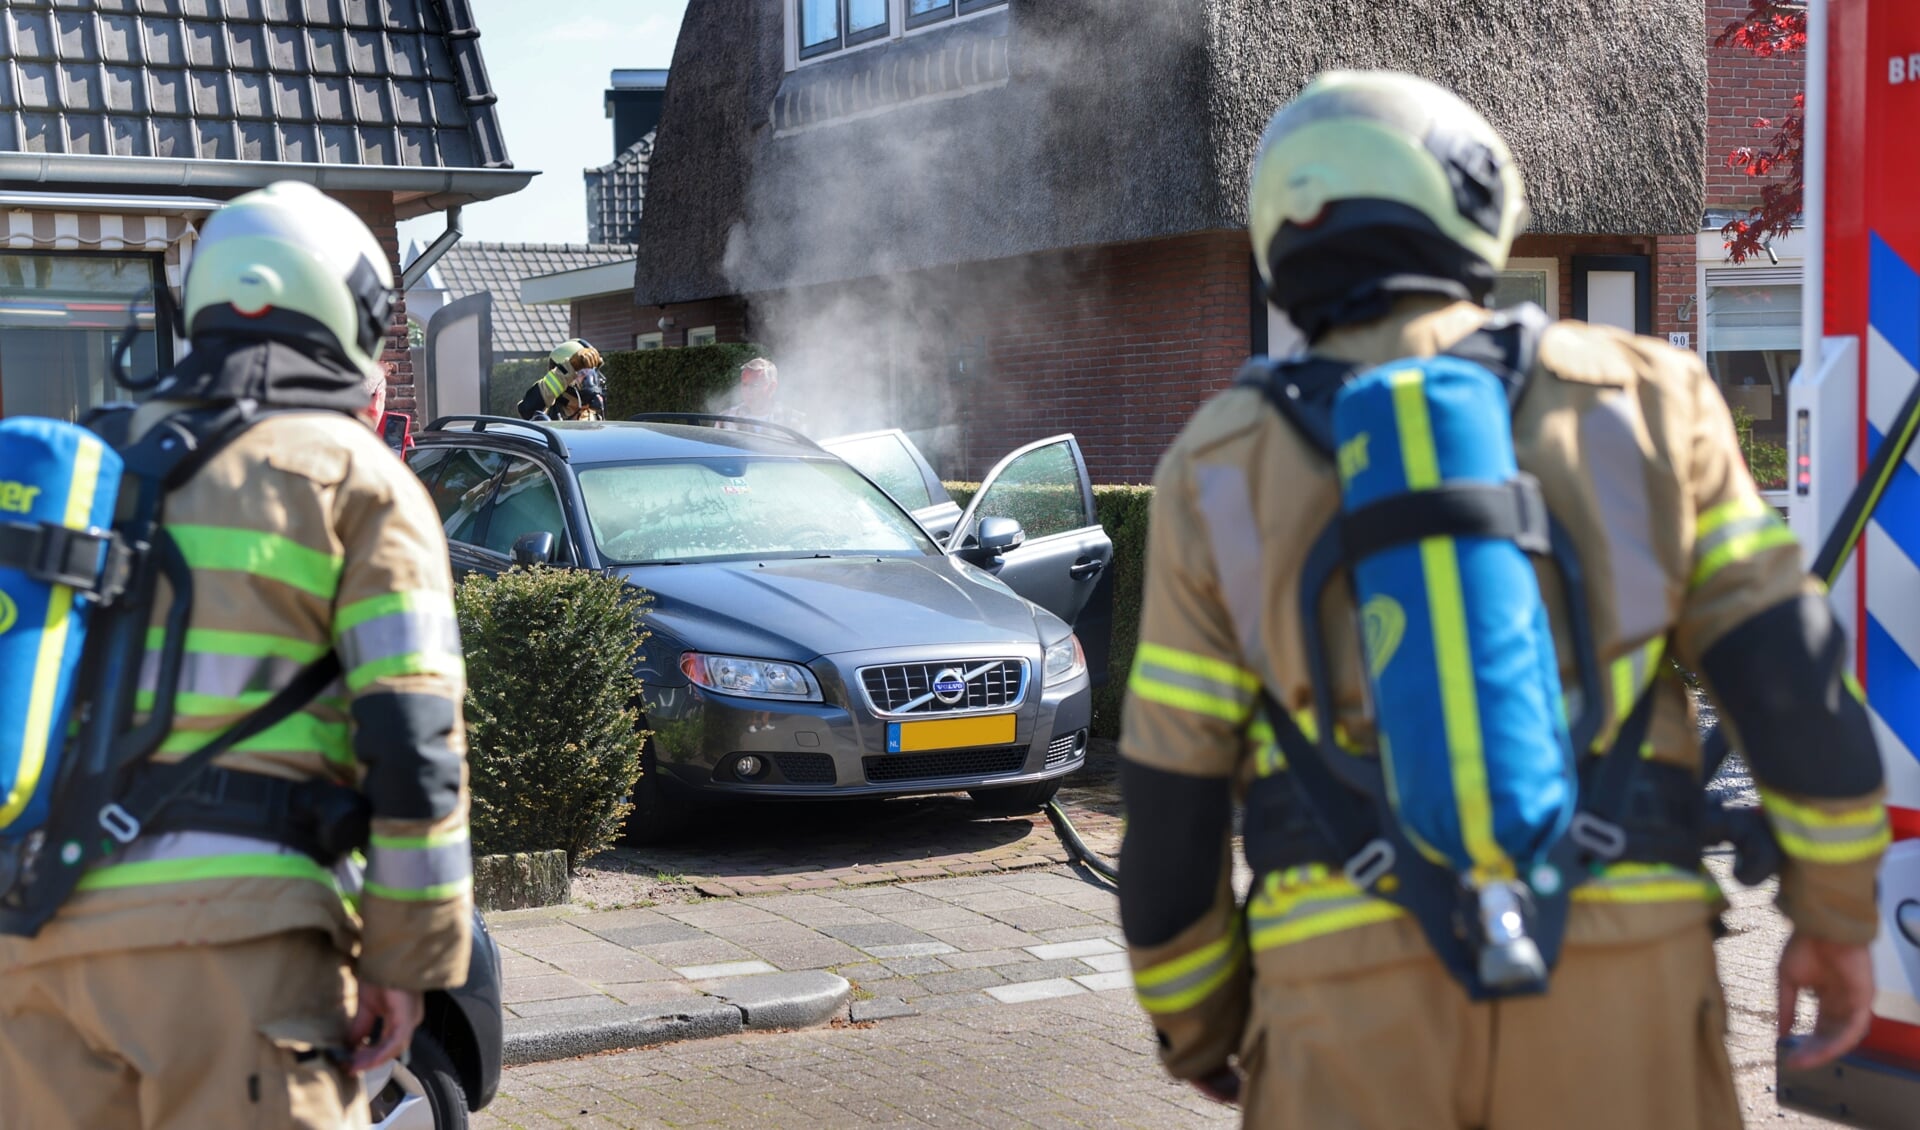 Snel ingrijpen van de brandweer bij een autobrand op een tuinpad in Zeist kon erger voorkomen.